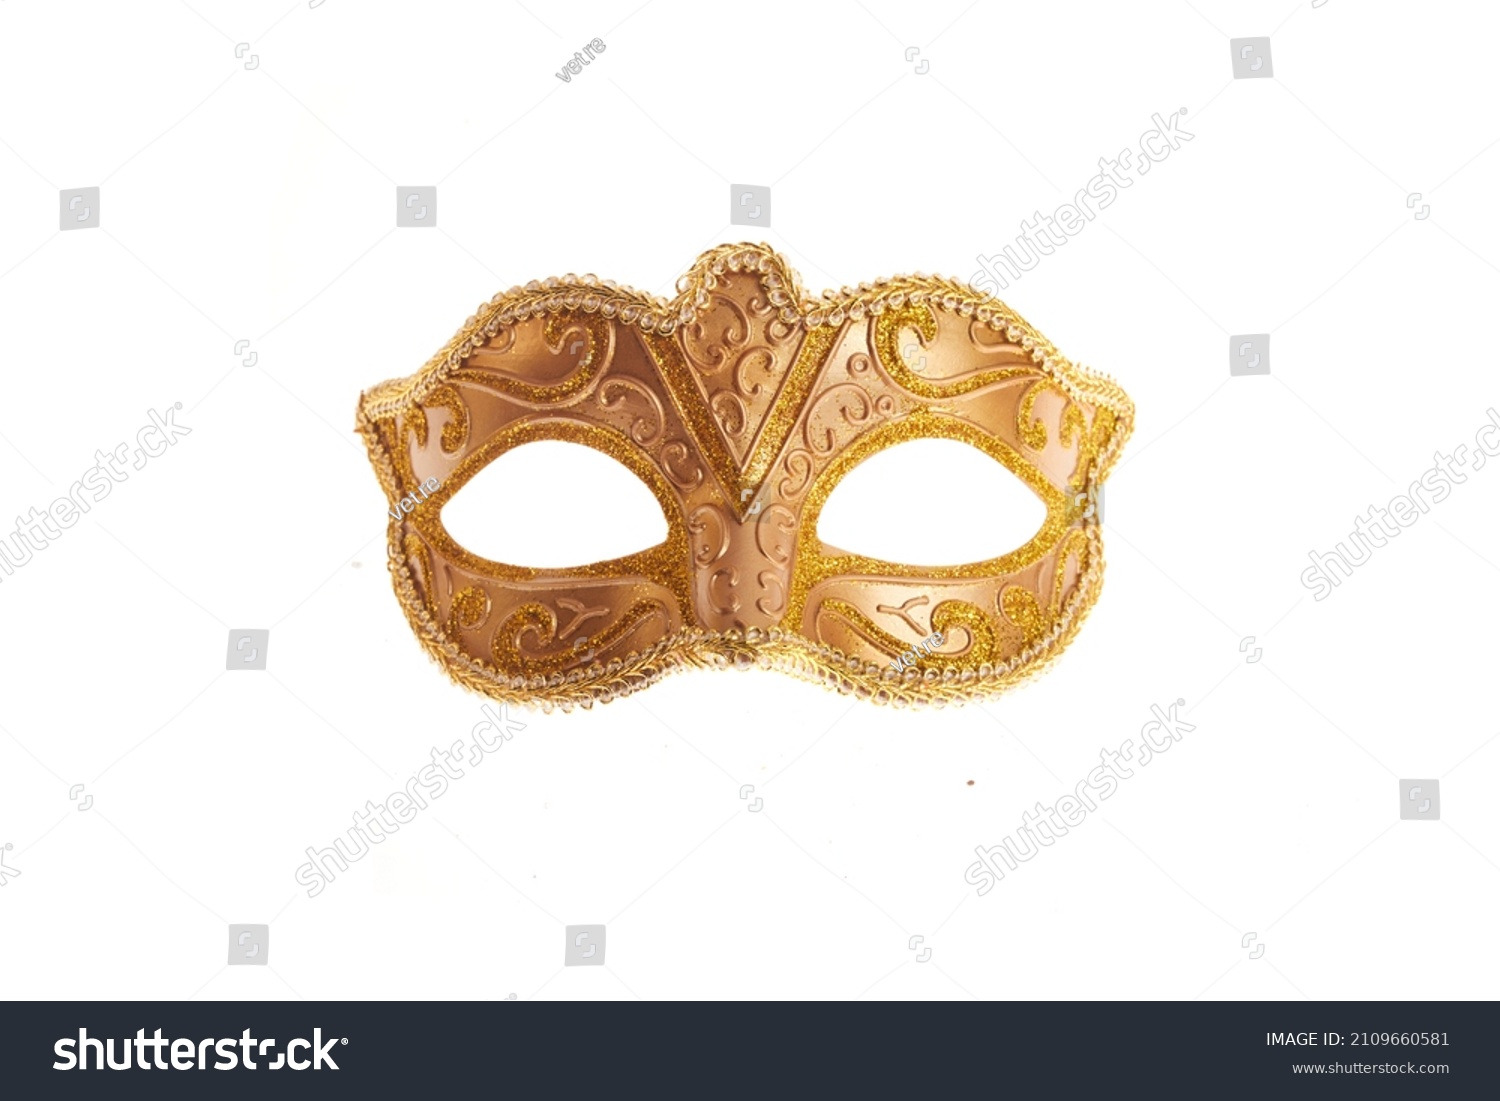 Mardi gras mask isolated on white background #2109660581